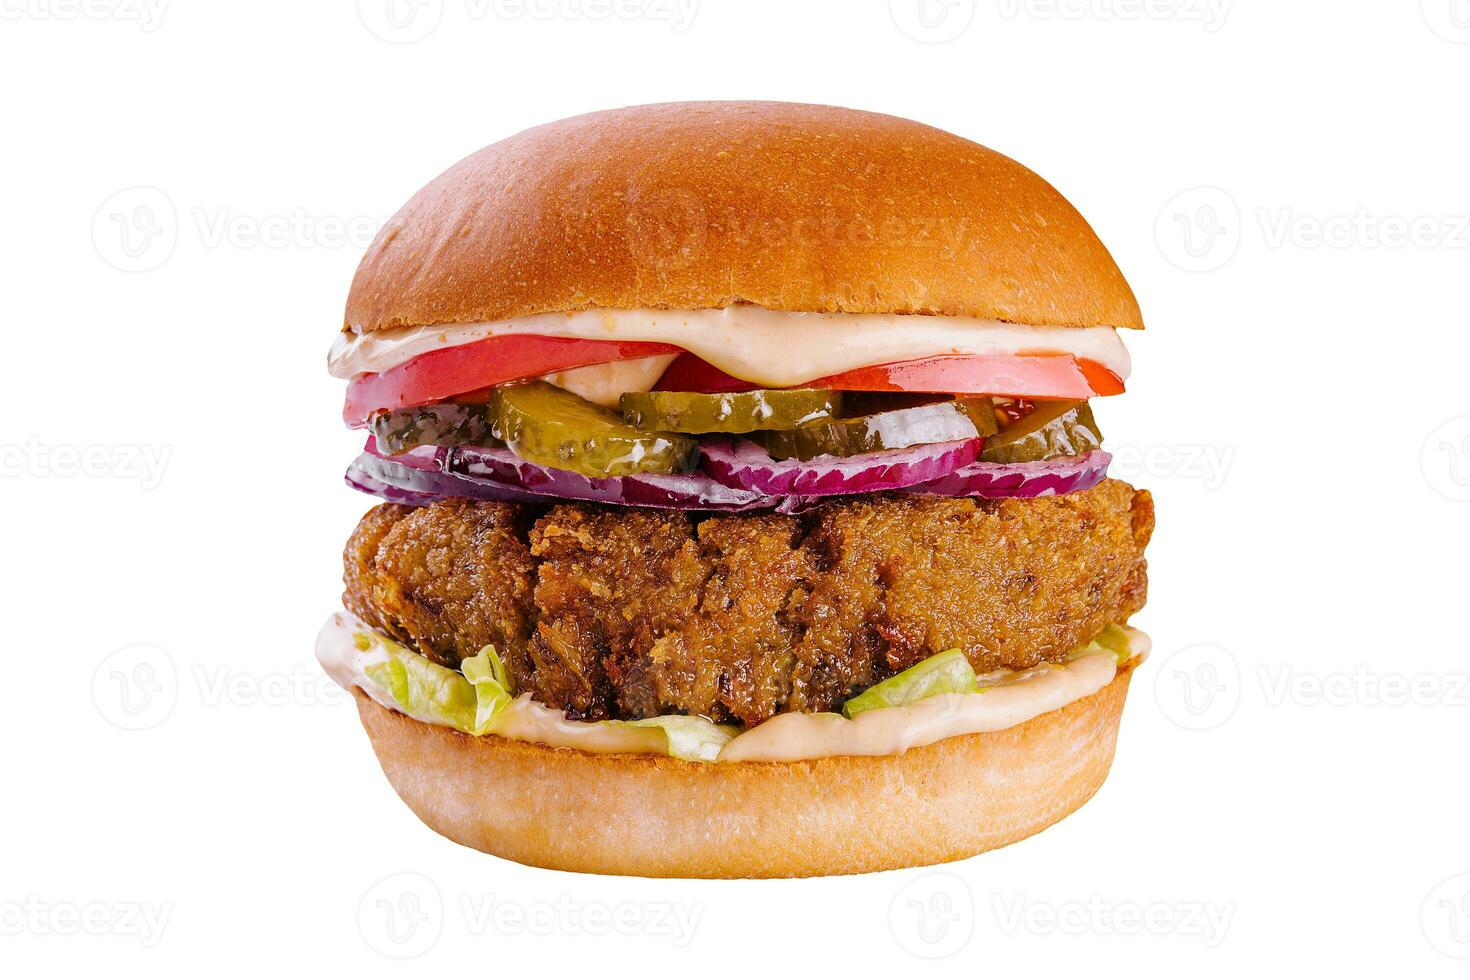 cheeseburger avec du boeuf petit pâté, cornichons, fromage, tomate, oignon, salade et ketchup moutarde isolé sur blanc Contexte photo